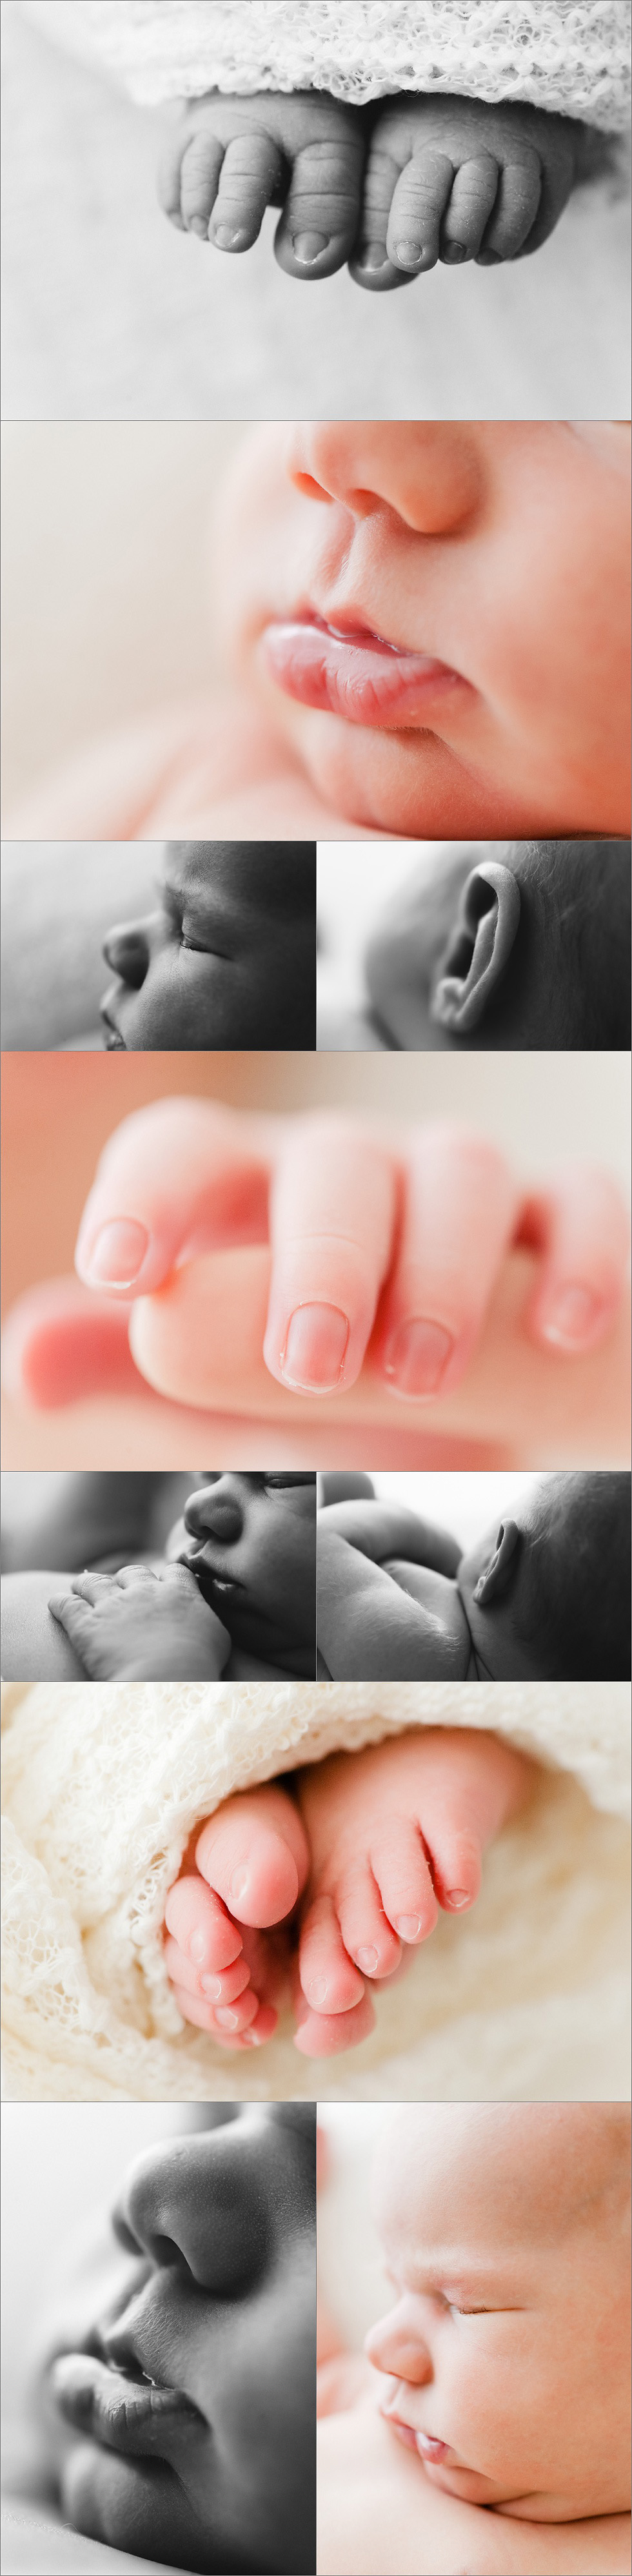 newborn baby girl macro details